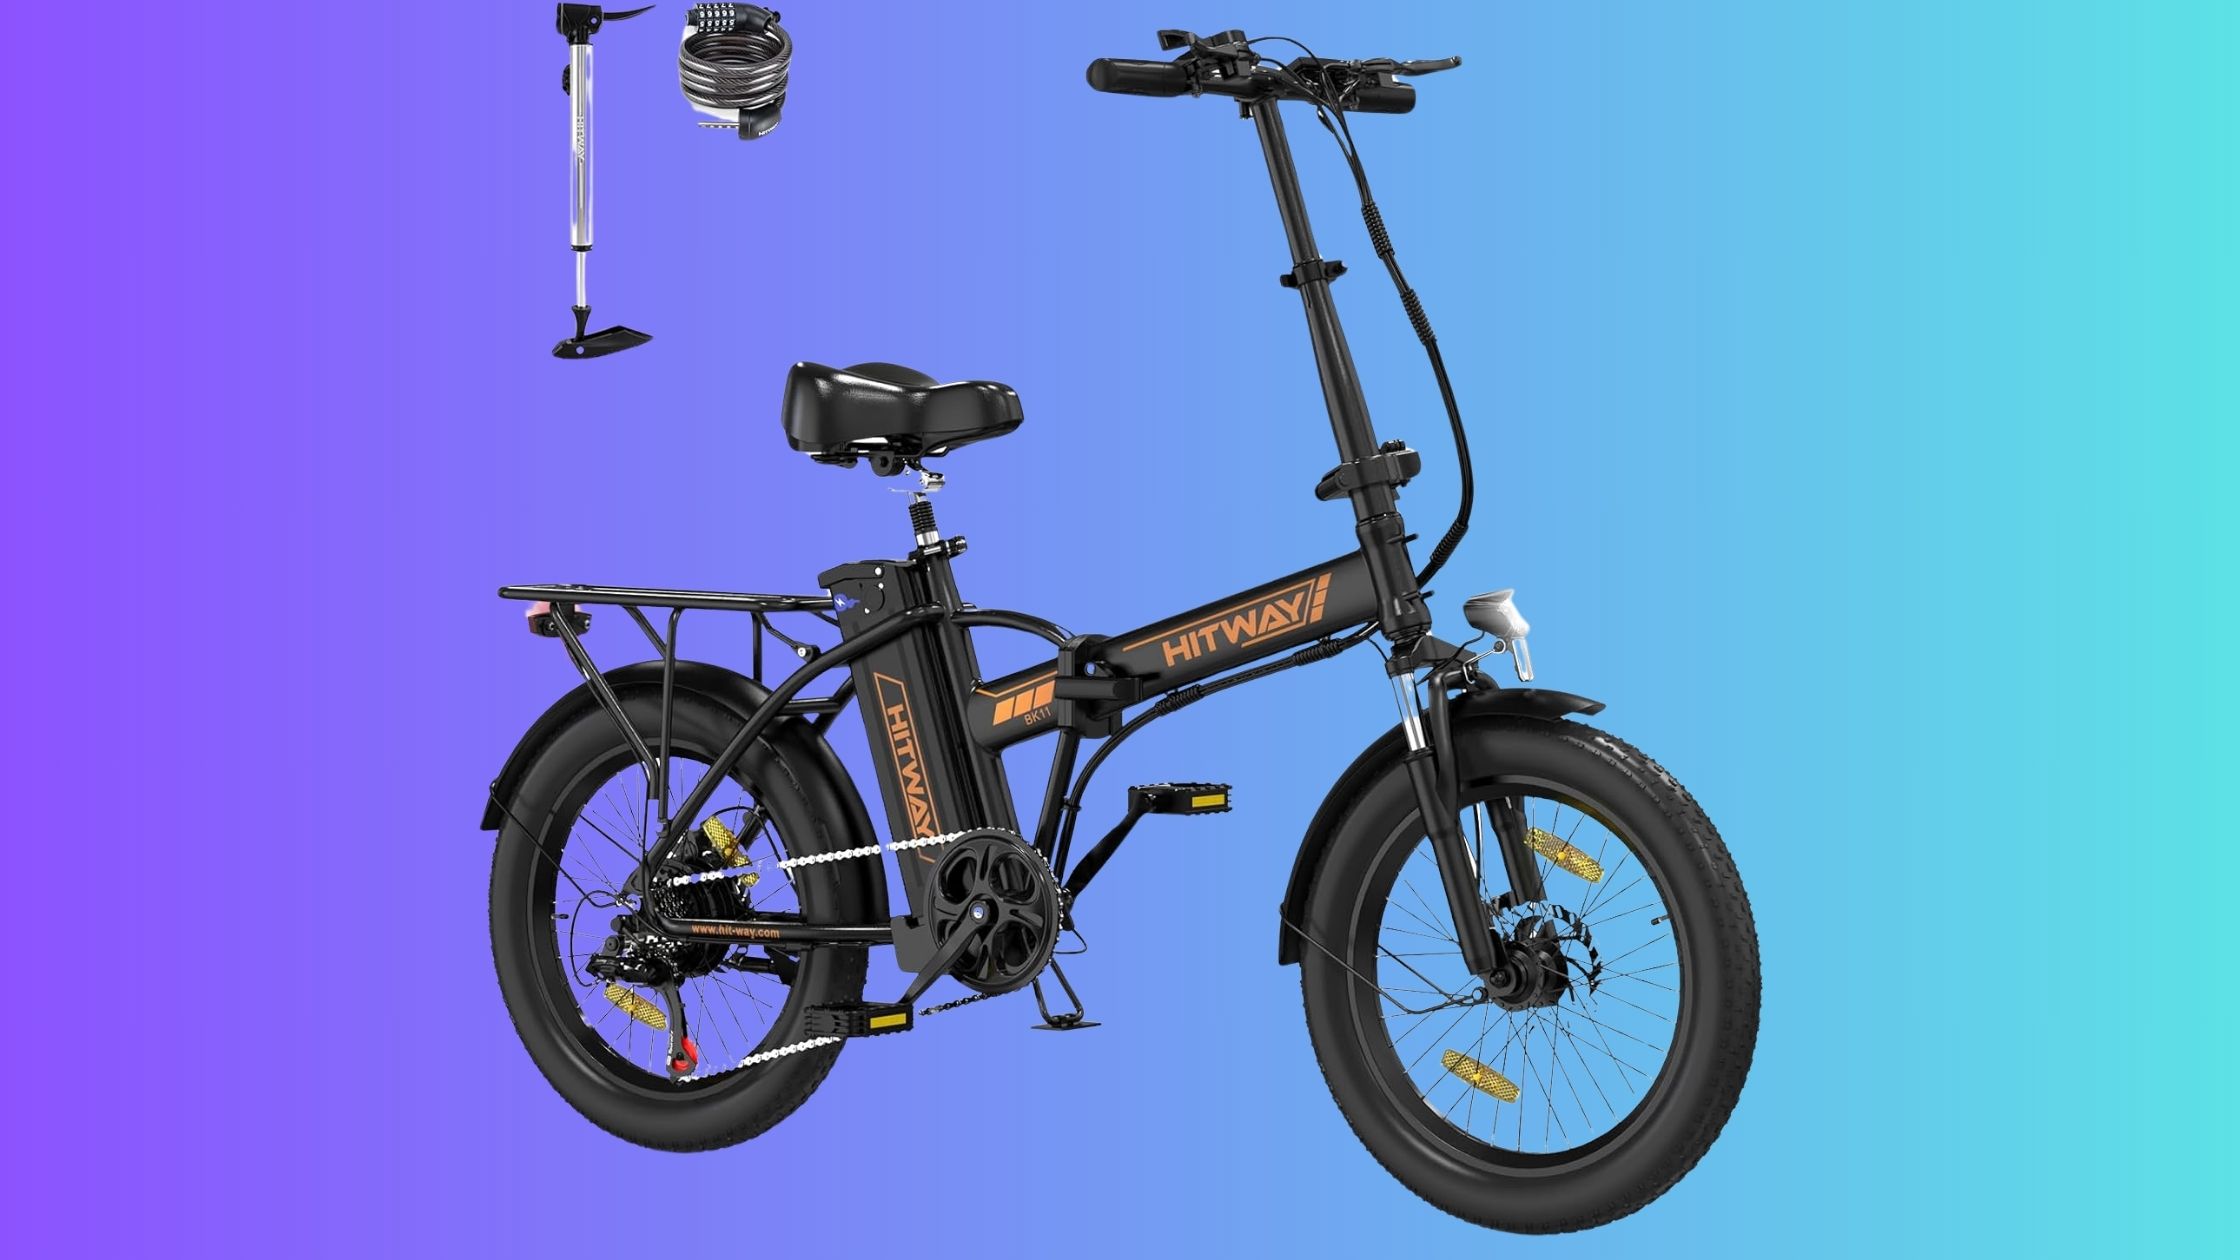 Le vélo électrique HITWAY BK11 est disponible à moins de 800 € : à saisir d'urgence durant les soldes d'été © Amazon